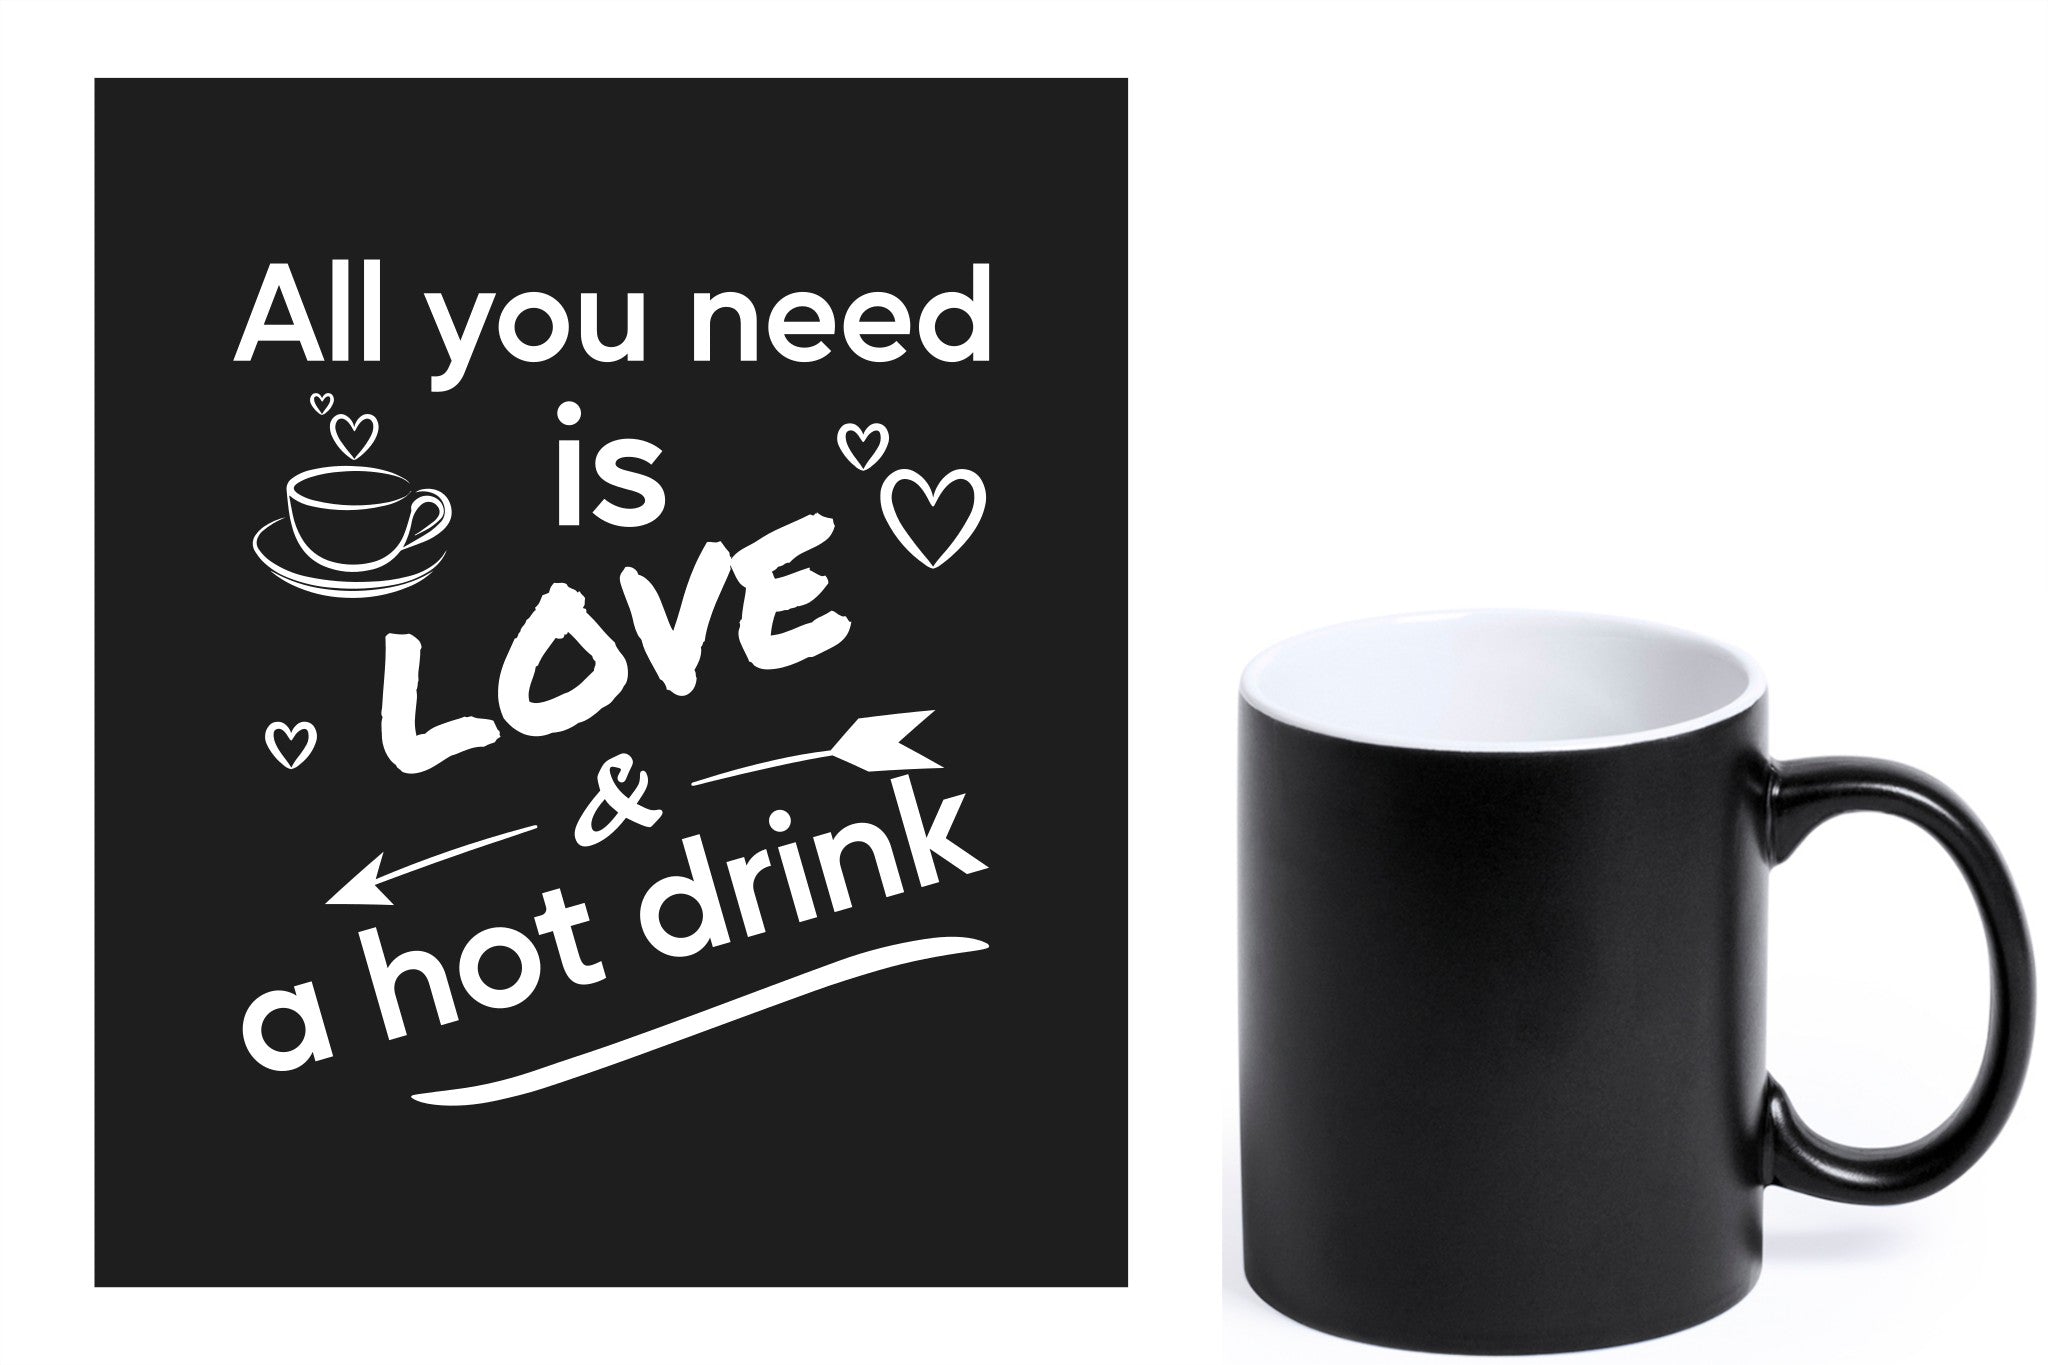 zwarte keramische mok met witte gravure  'All you need is love & a hot drink'.